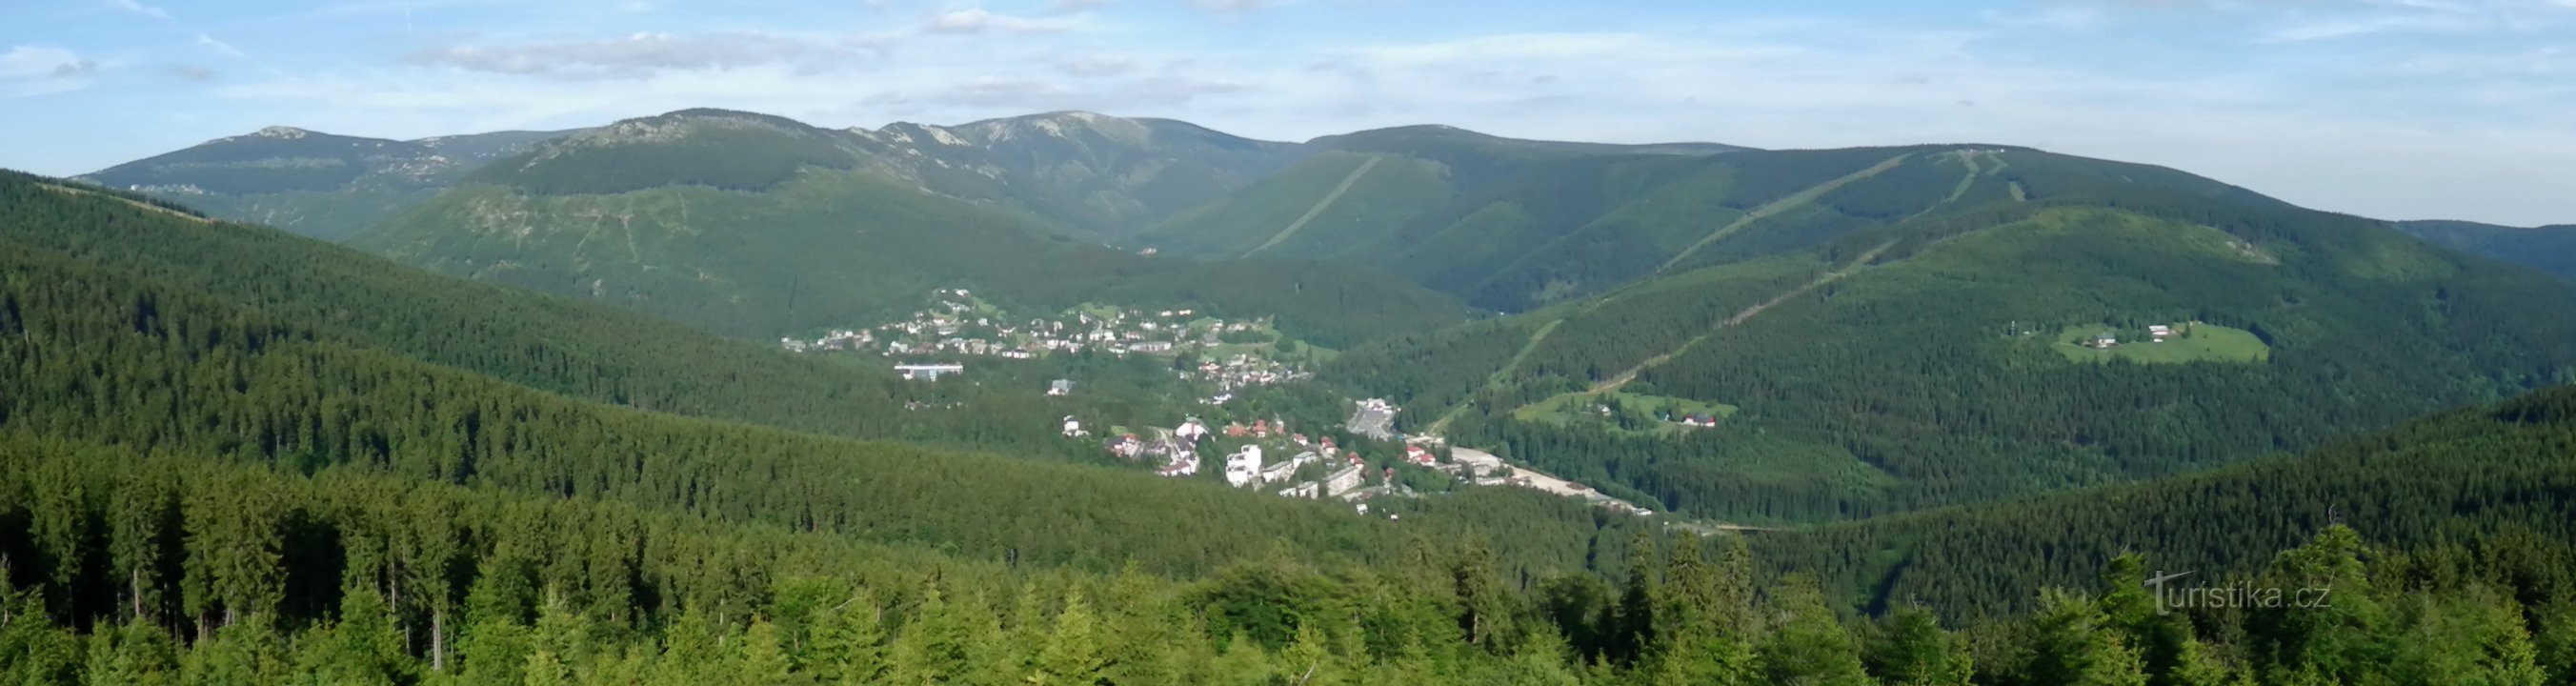 Πανοραμική θέα από τον βράχο Harrach (από το Malé Špičák έως το Hromovka), παρακάτω